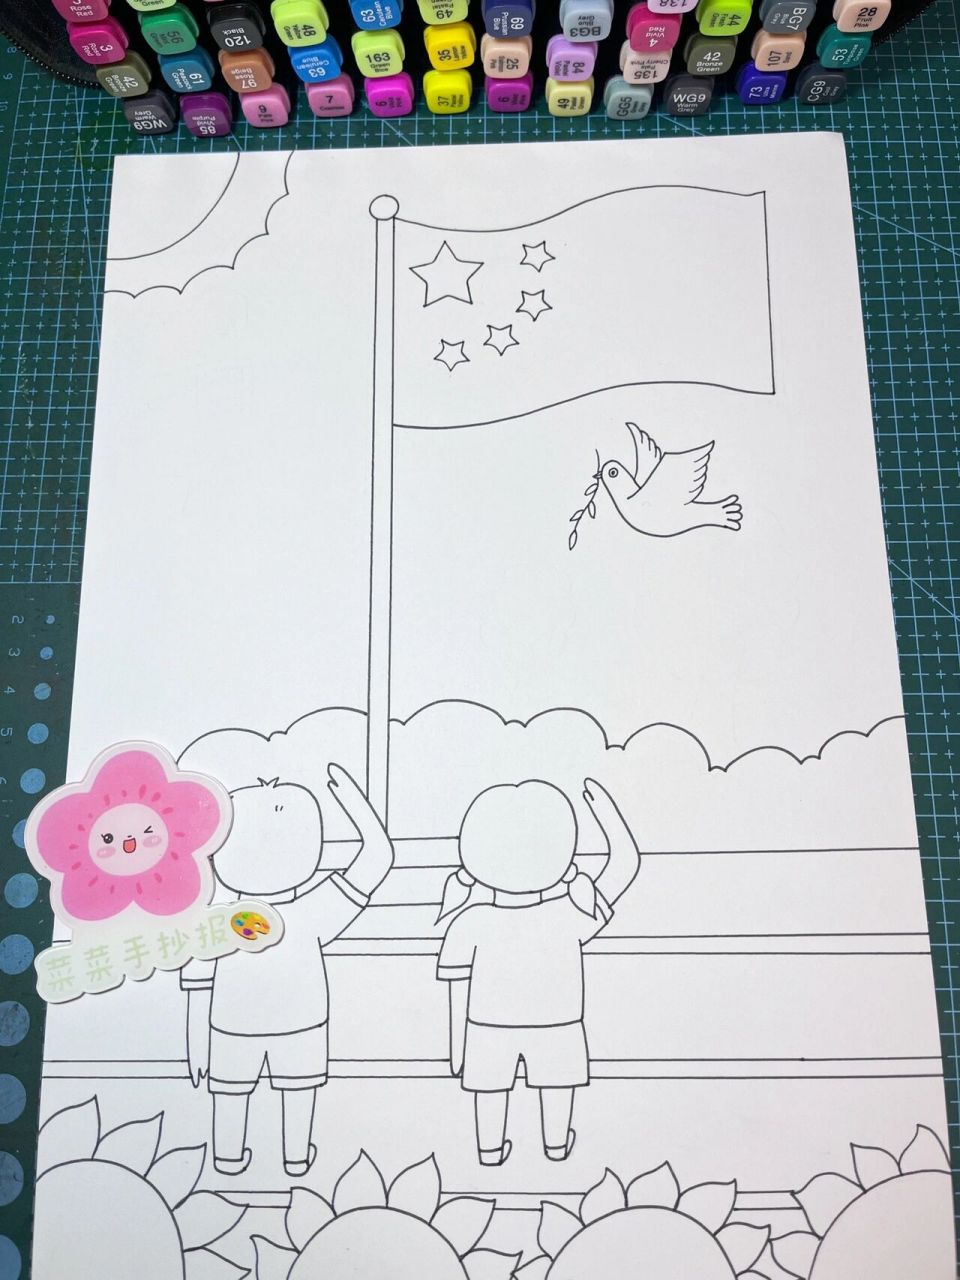 国旗的画法 儿童画图片